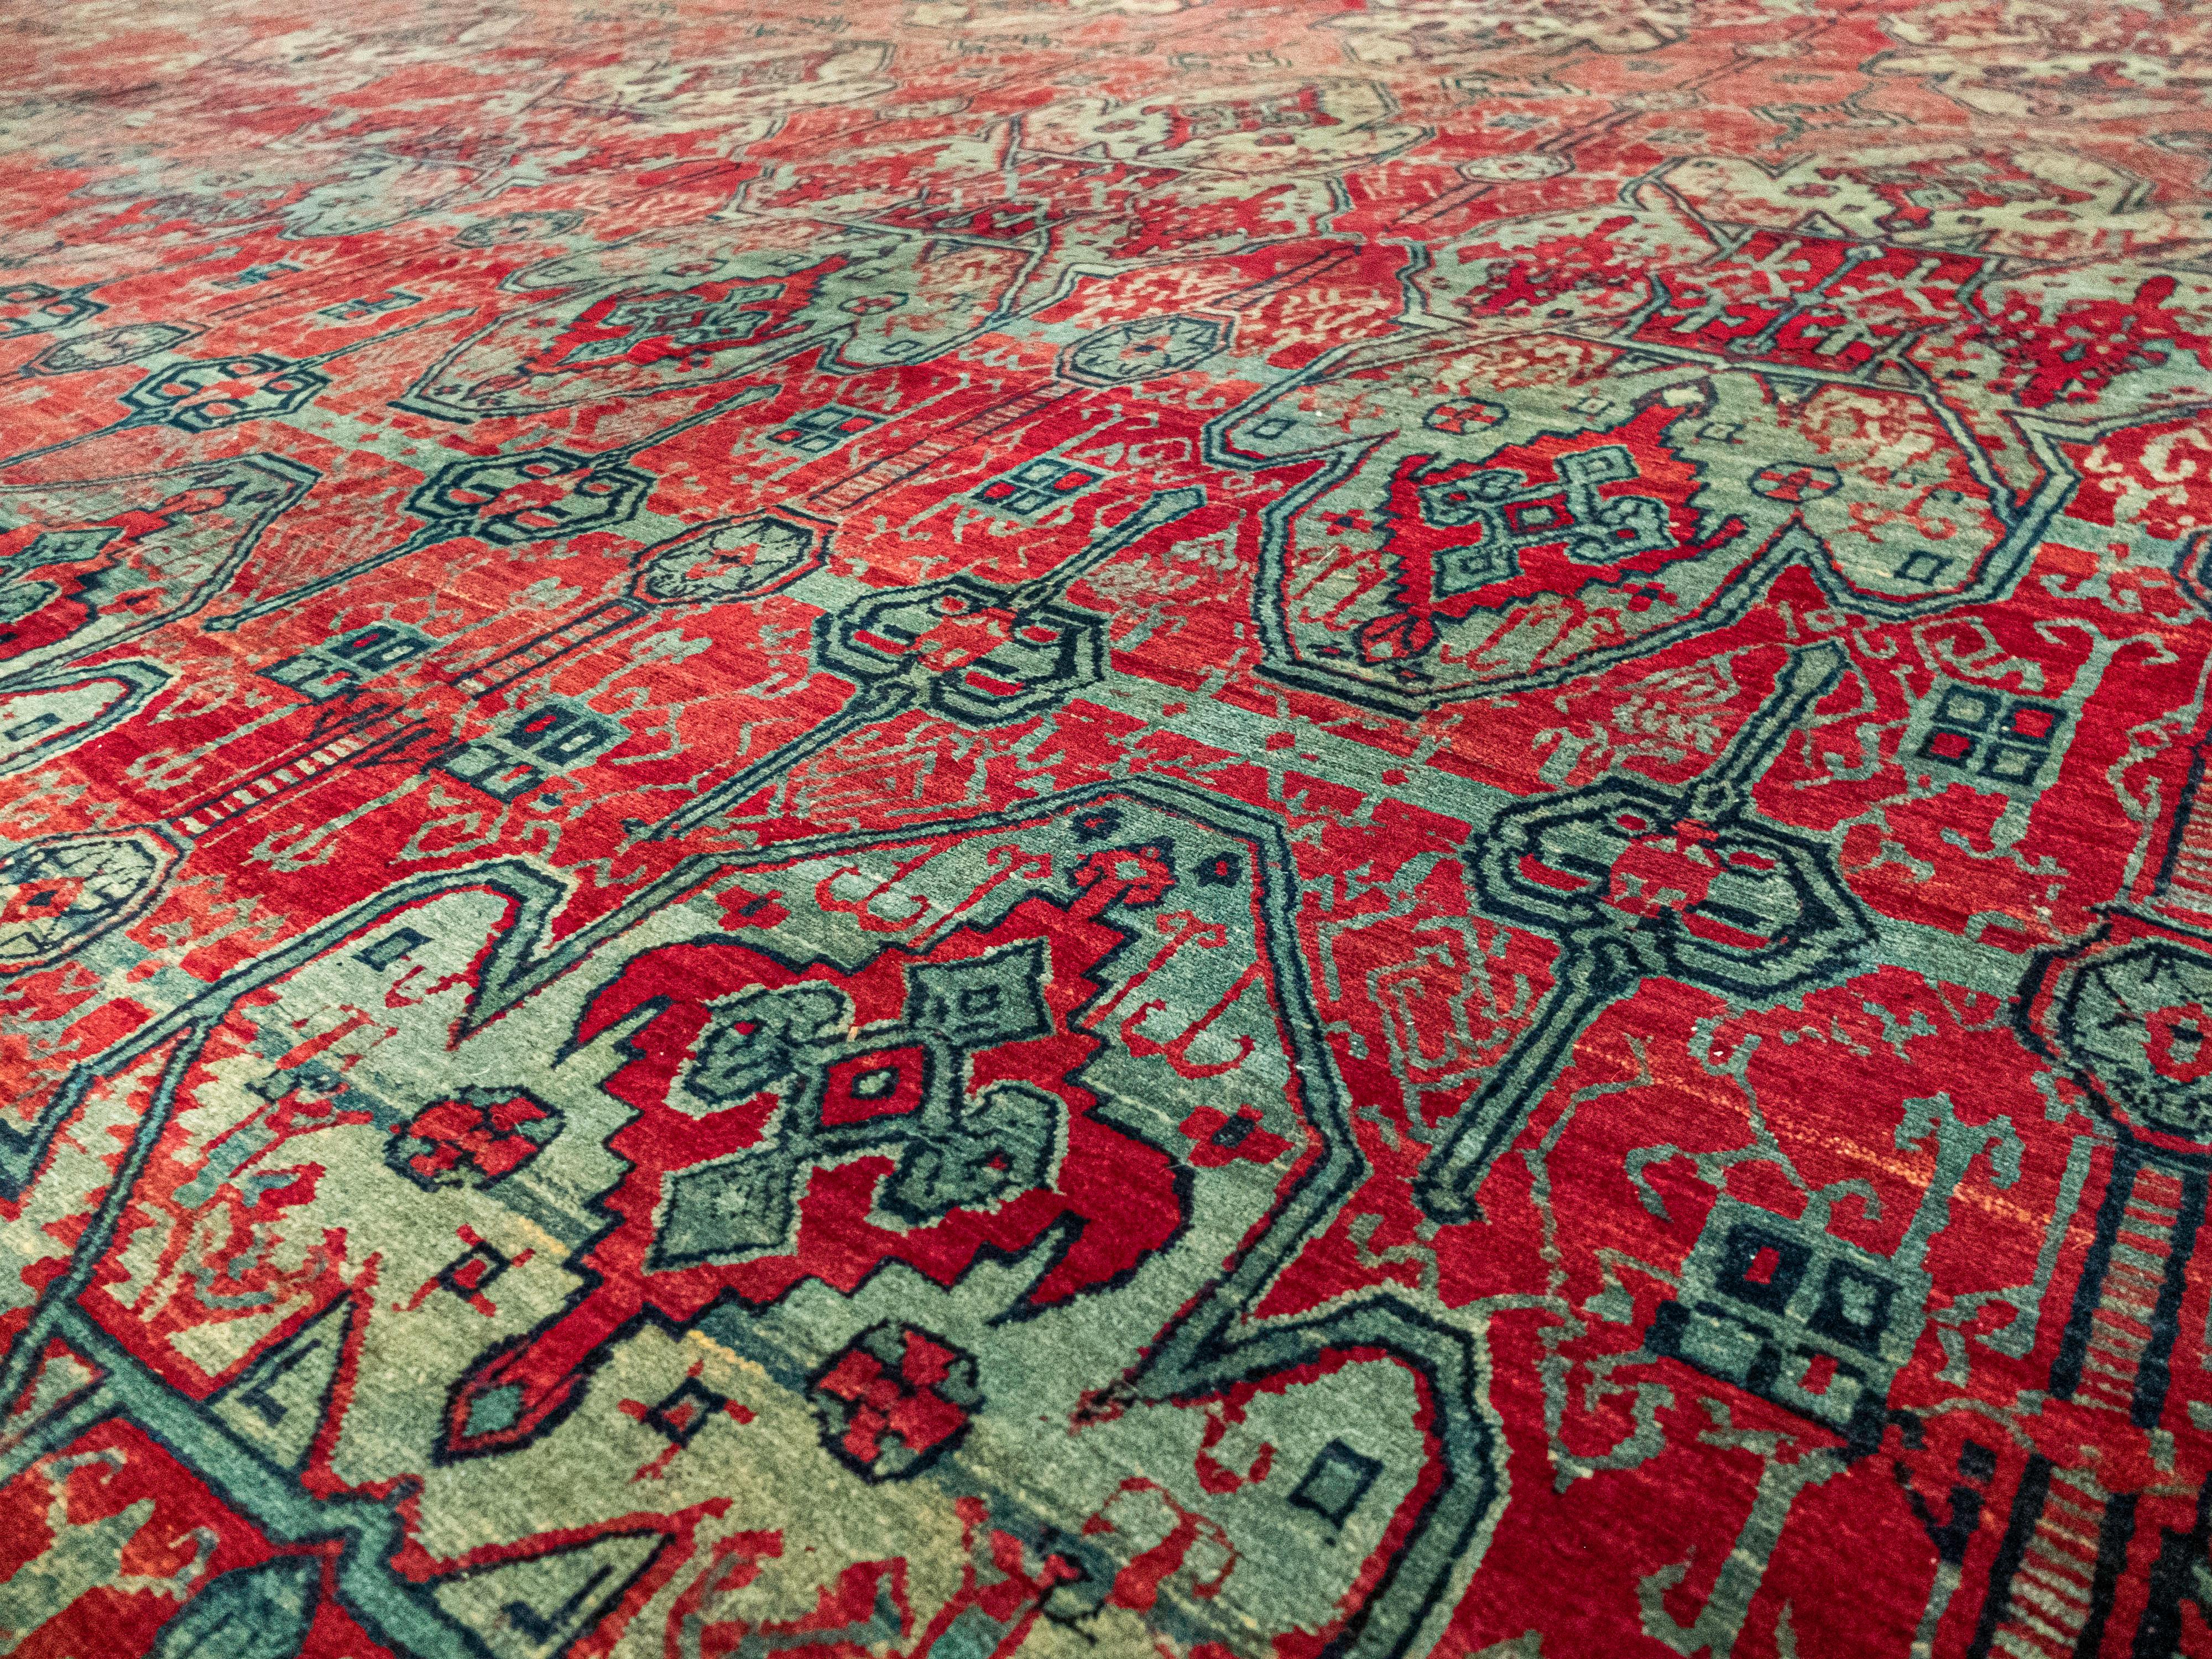 Dies ist ein einzigartig gemusterter antiker Khorasan-Teppich. Es hat komplizierte Details im Hauptfeld und verwendet tiefe Rottöne und helle, grünliche Blautöne. Dann folgt eine leicht kontrastierende, rankengemusterte Bordüre mit gelben Akzenten.